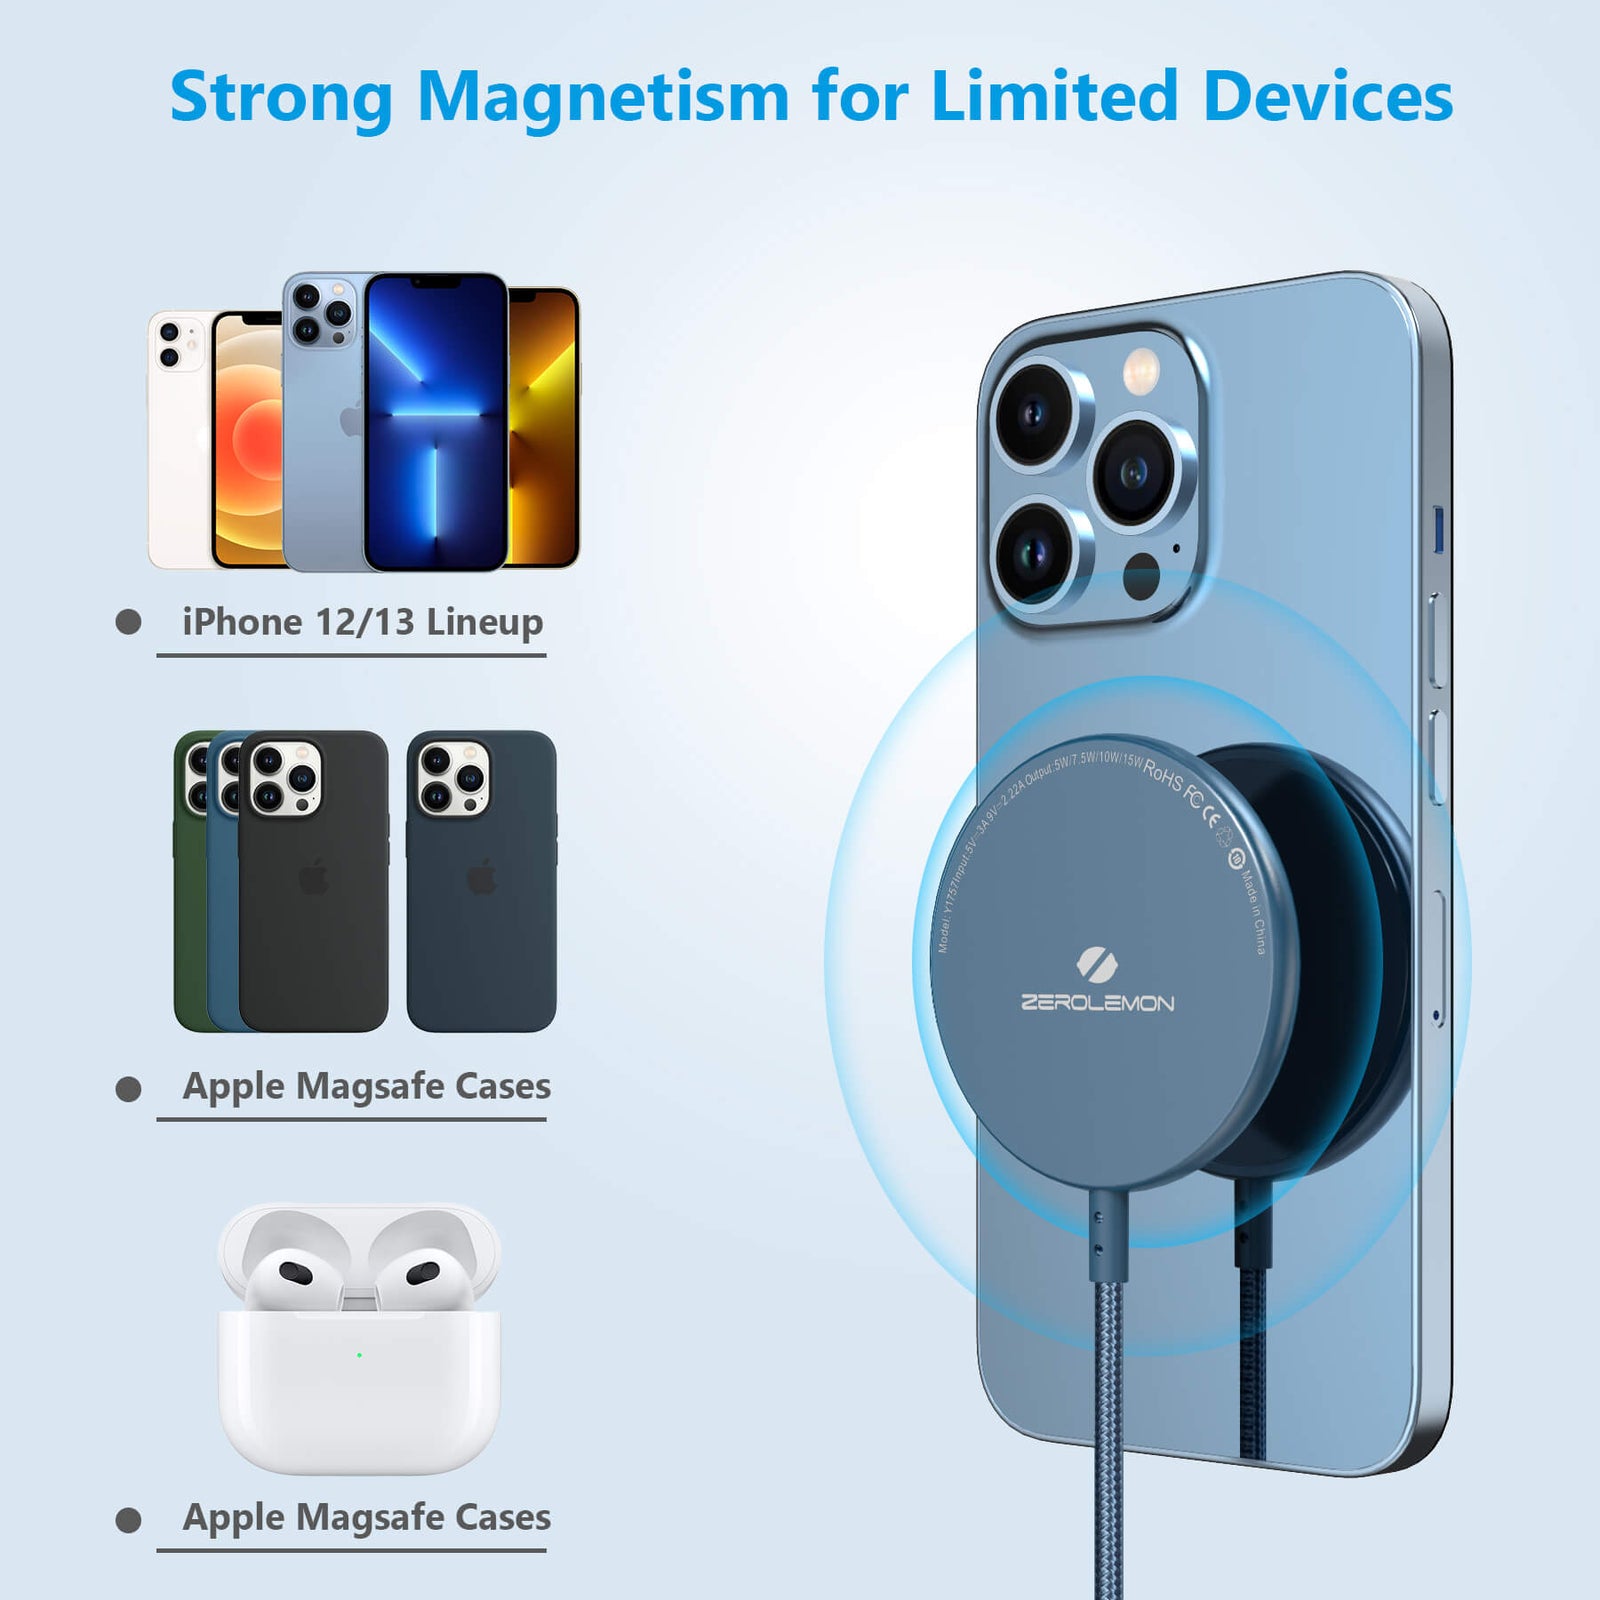 MagSafe Adapter- iPhone